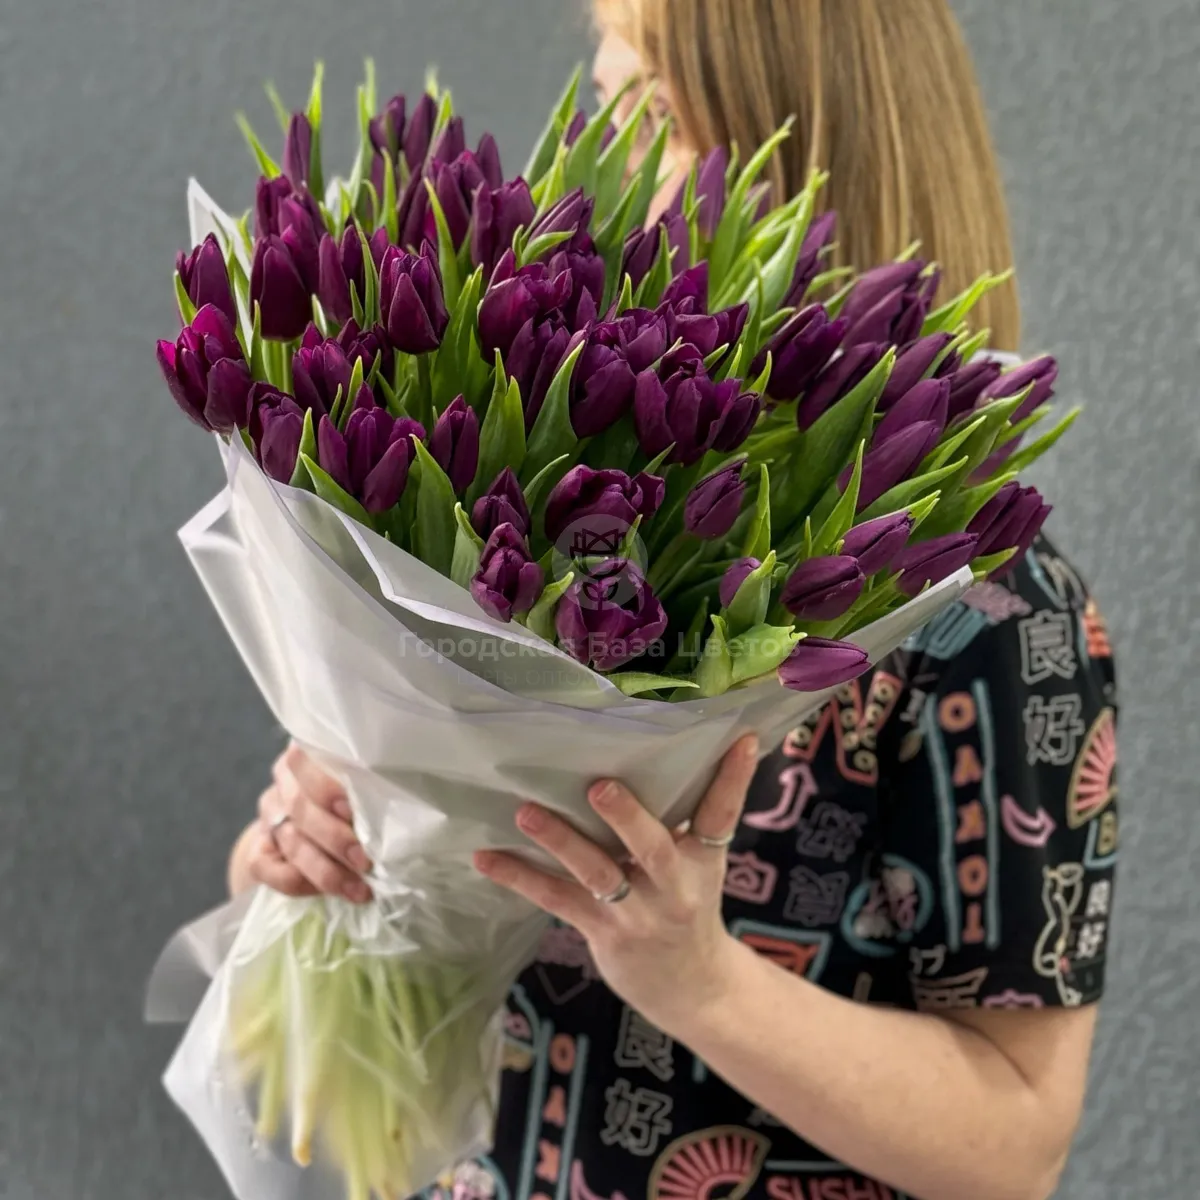 73 бордово-фиолетовых тюльпанов